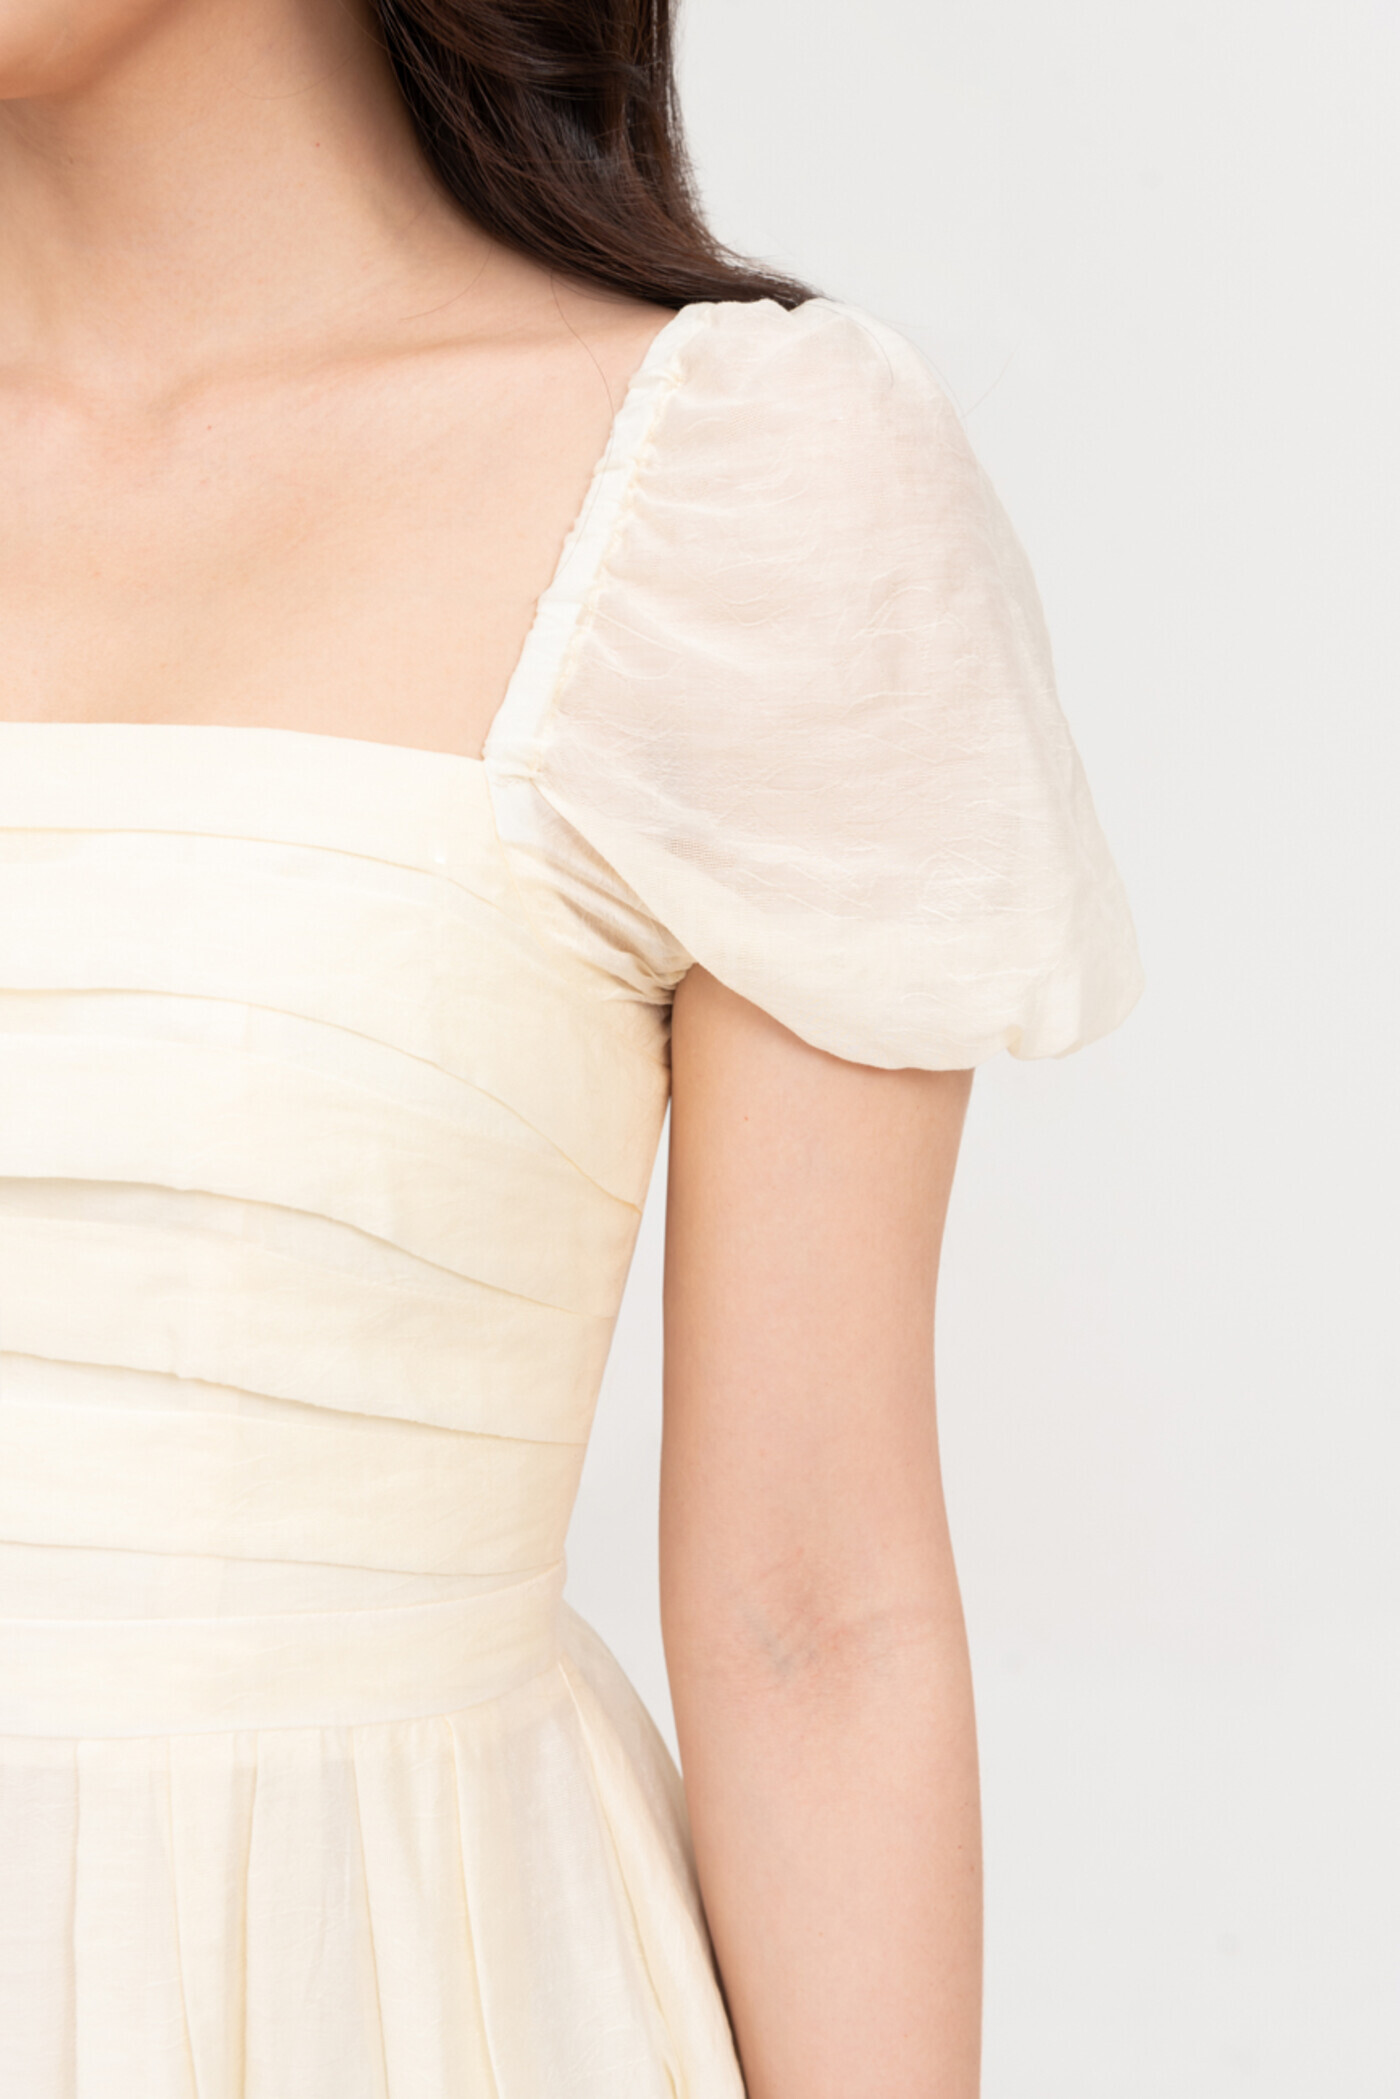 Freesia Dress - Đầm xòe xếp ly cổ vuông